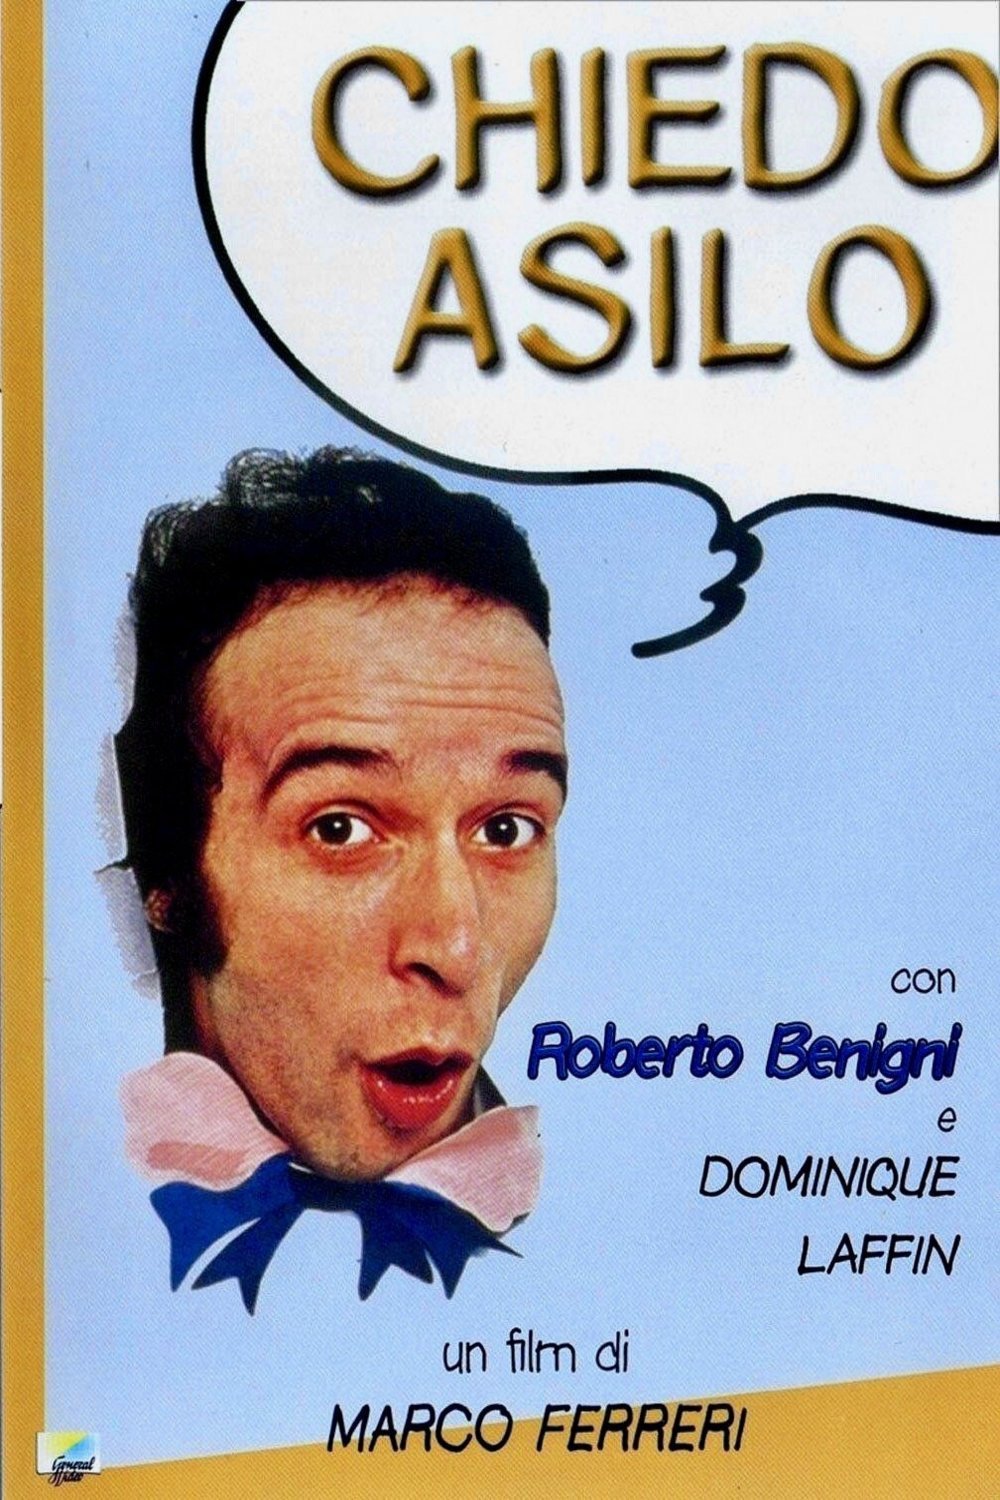 L'affiche originale du film Chiedo asilo en italien